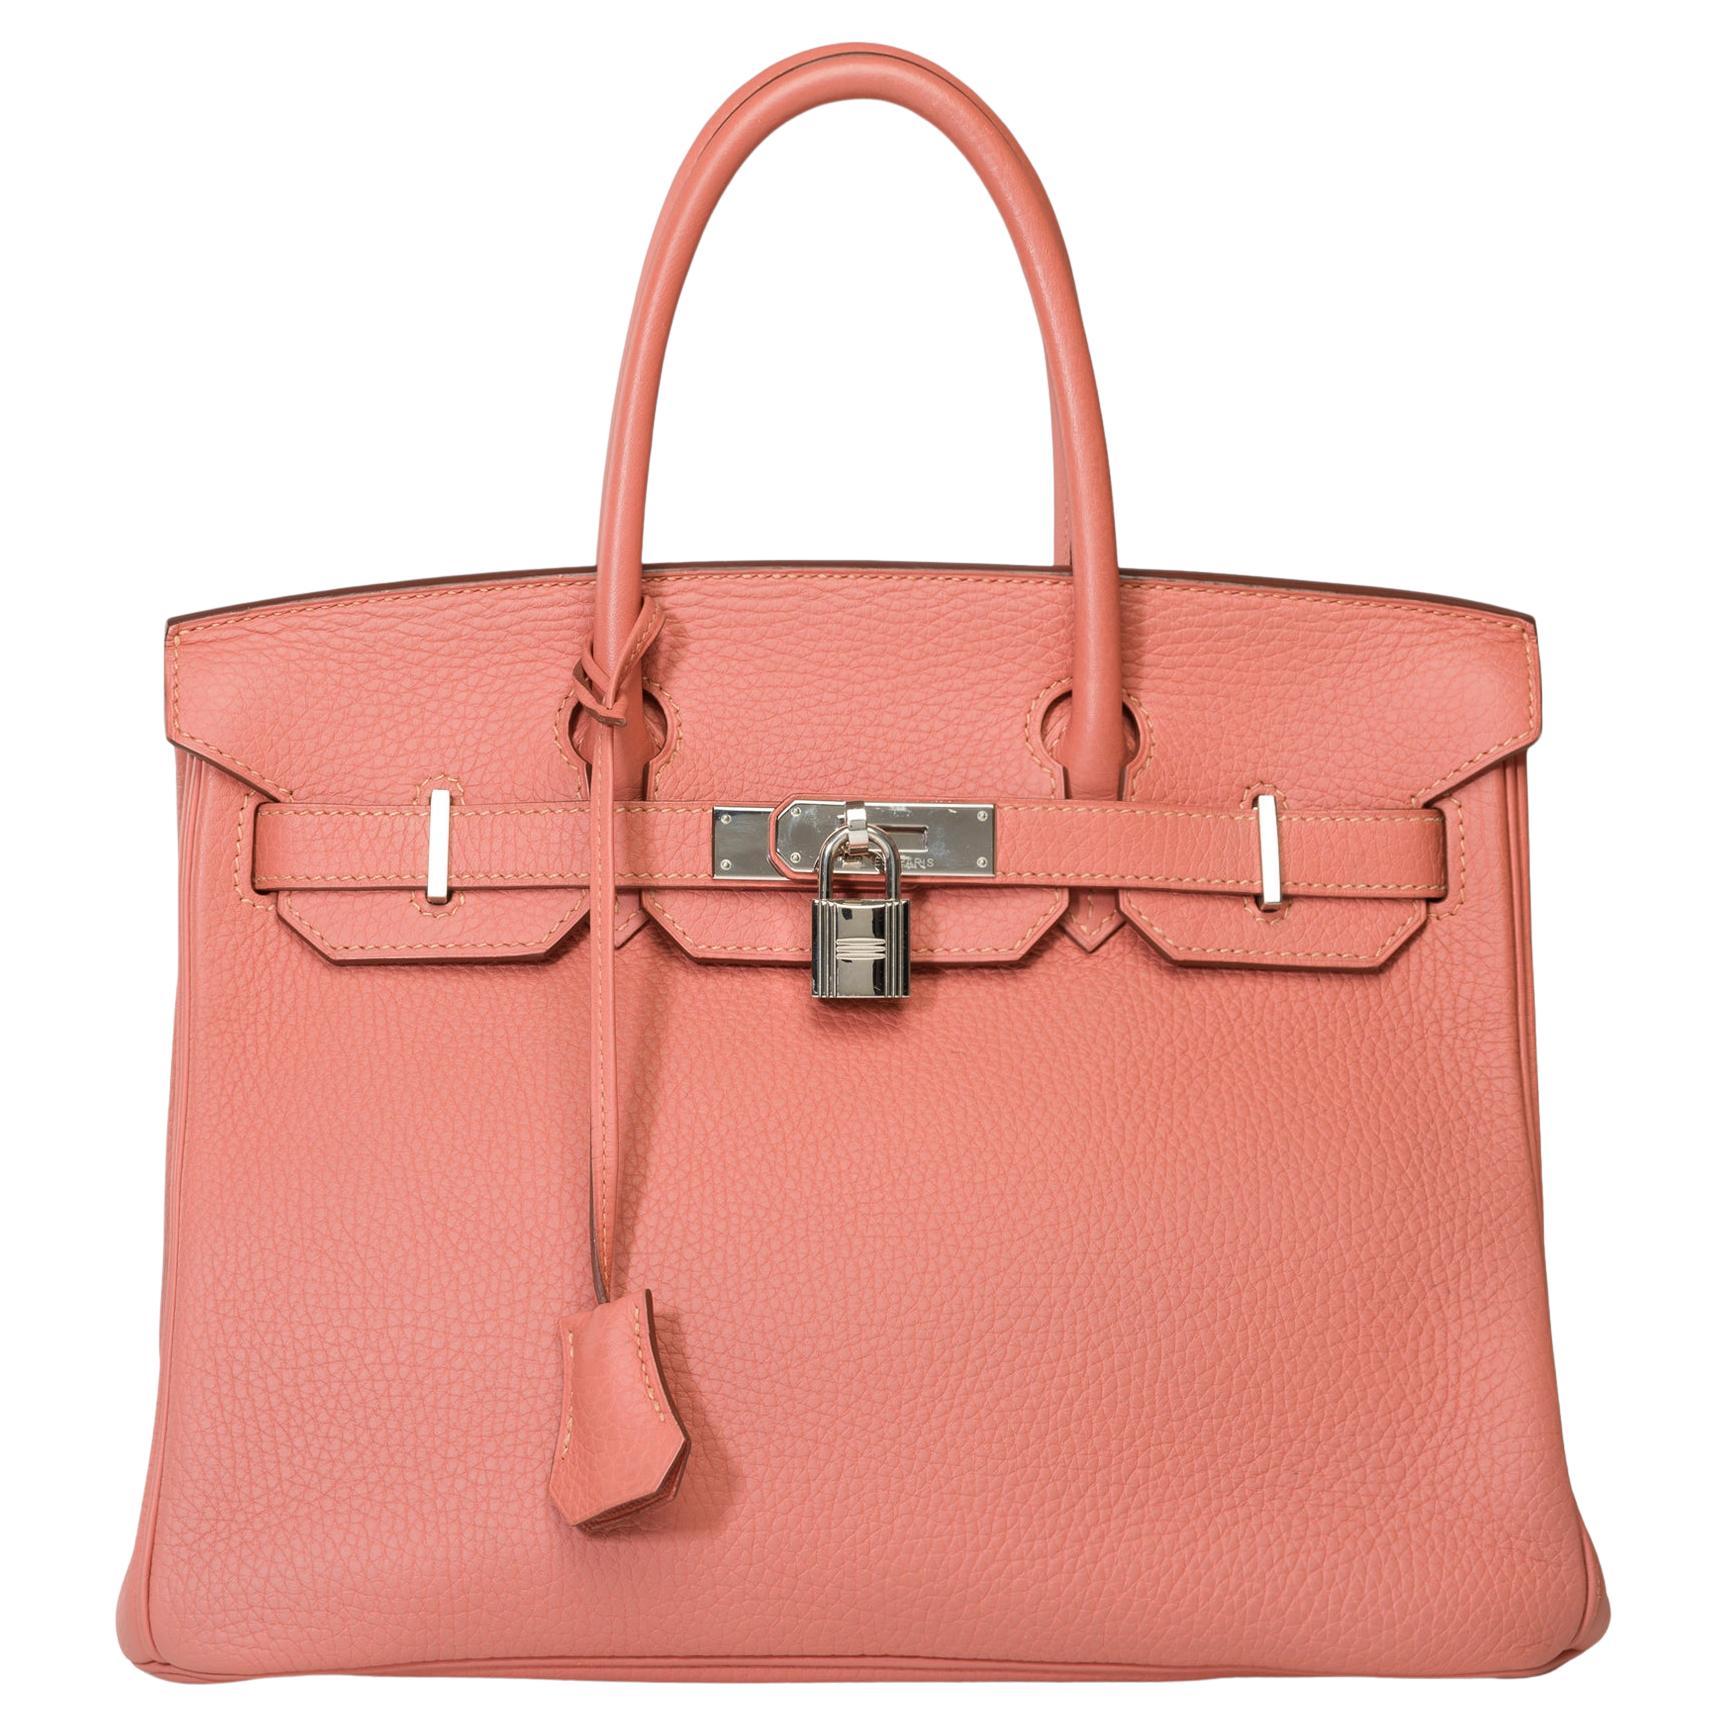 Stunning Hermes Birkin 30 handbag in Rose Tea Togo leather, SHW For Sale